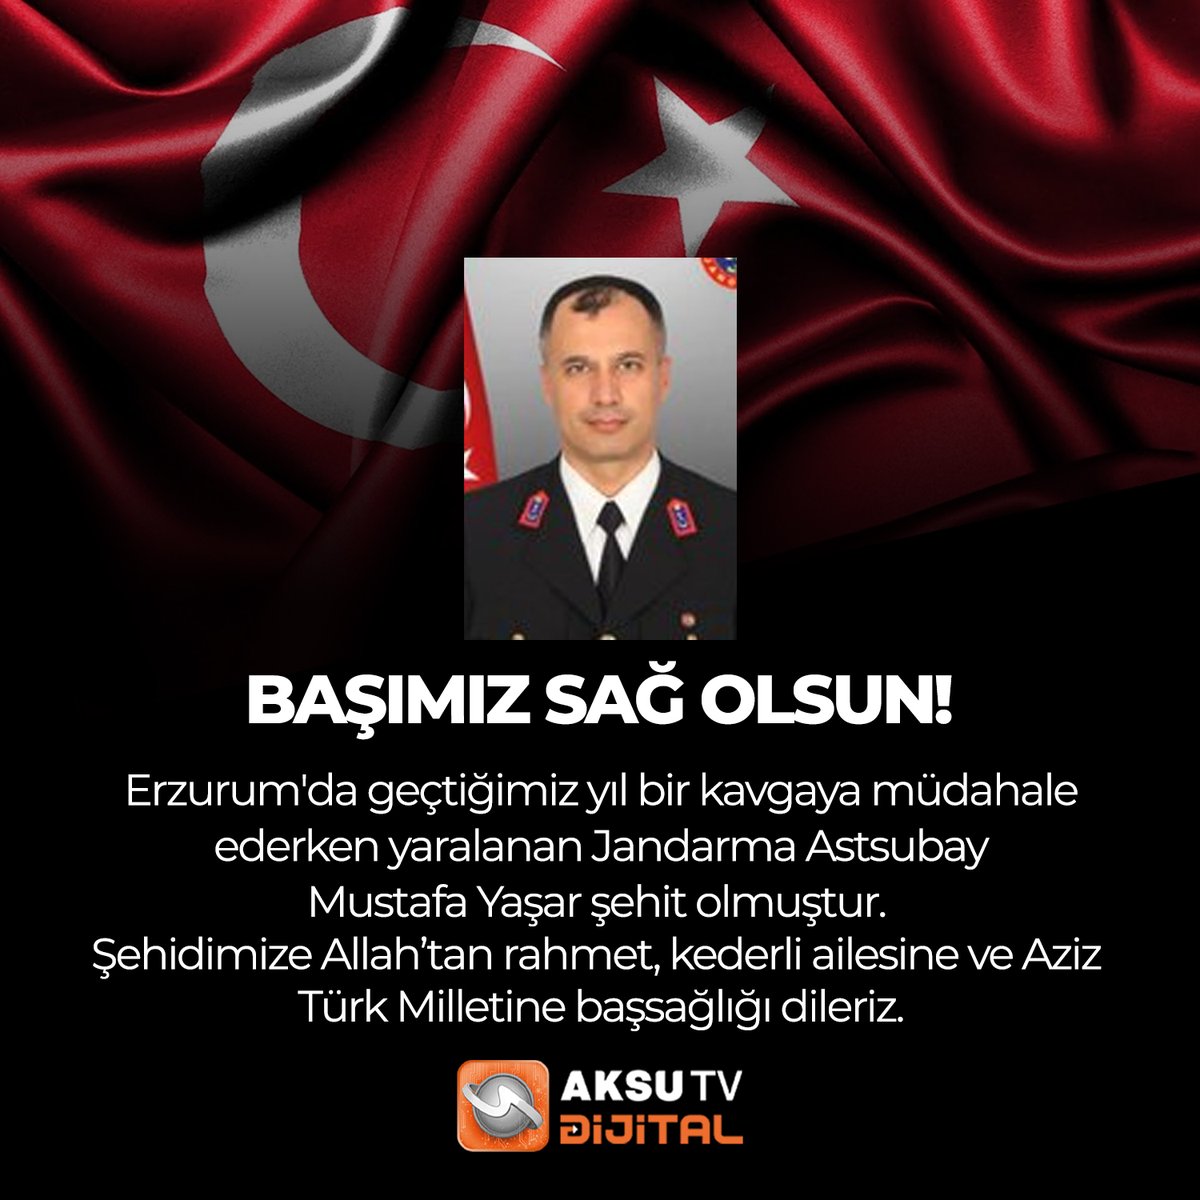 Erzurum'da geçtiğimiz yıl bir kavgaya müdahale ederken yaralanan Jandarma Astsubay
Mustafa Yaşar şehit olmuştur. Şehidimize Allah’tan rahmet, kederli ailesine ve Aziz Türk Milletine başsağlığı dileriz.

#Şehit #sehidinvartürkiye